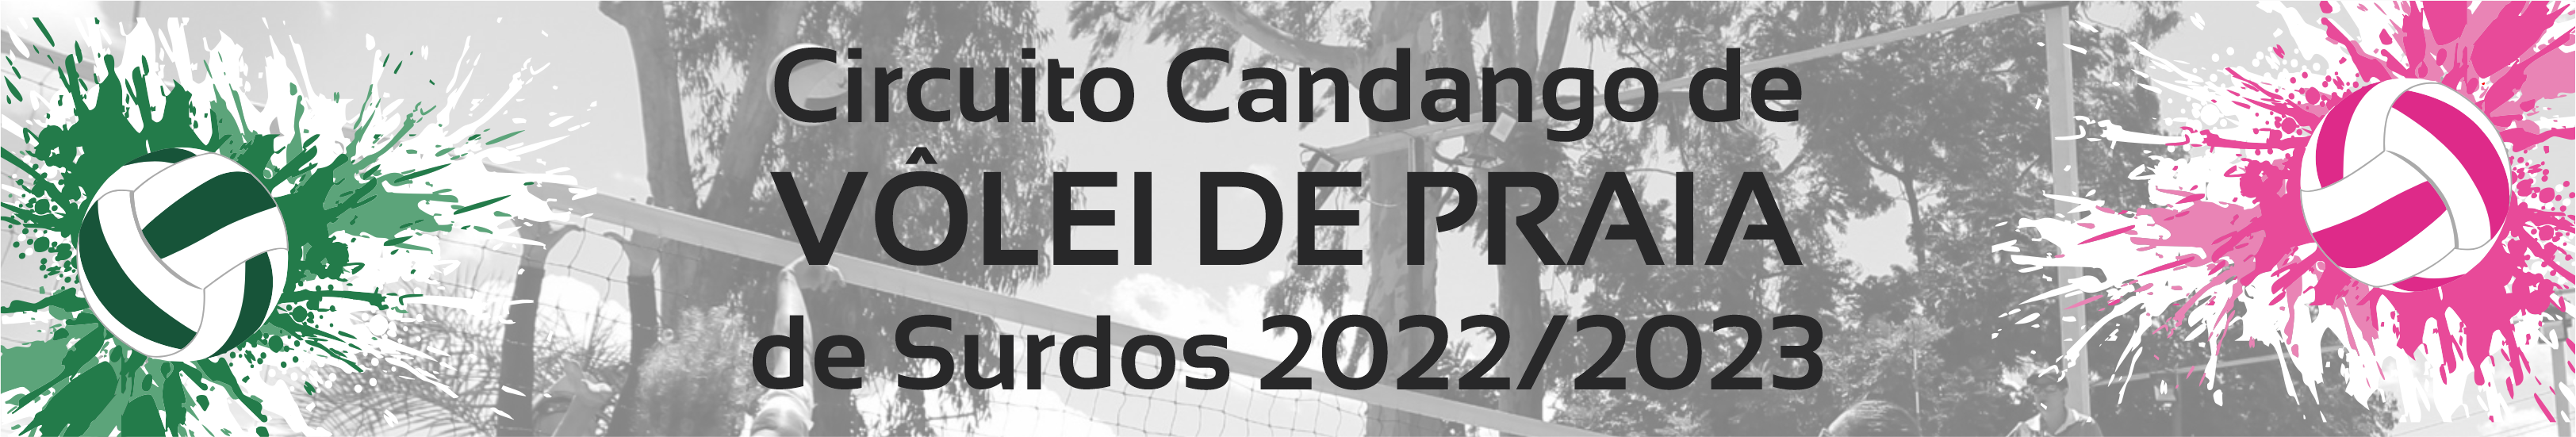 Capinha site VP noticia 2022.2023